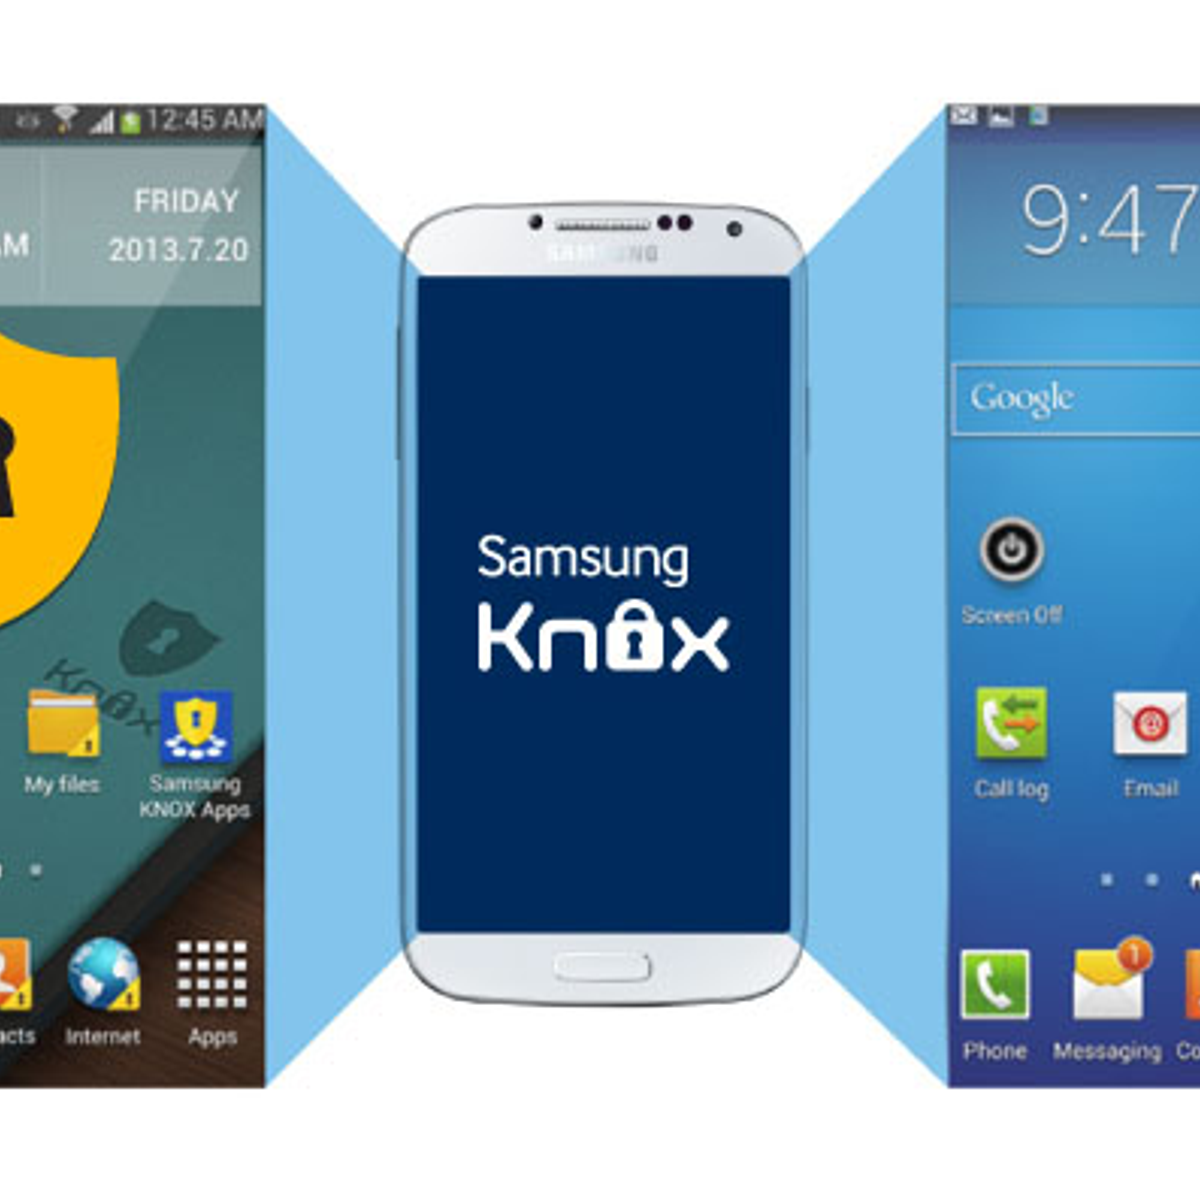 Samsung KNOX Alternatives and Similar Apps - AlternativeTo.net